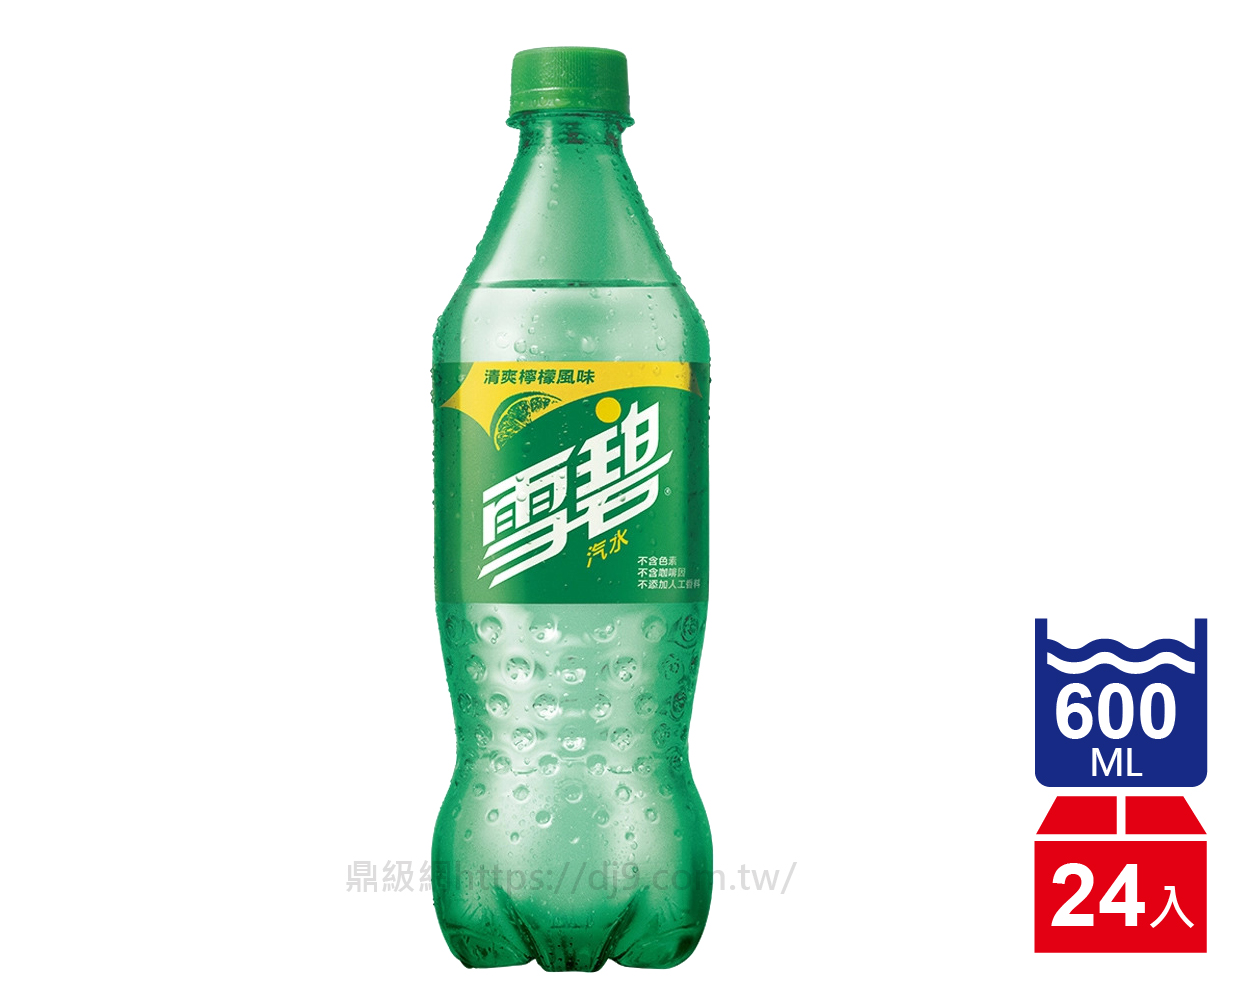 雪碧汽水(600mlx24瓶)